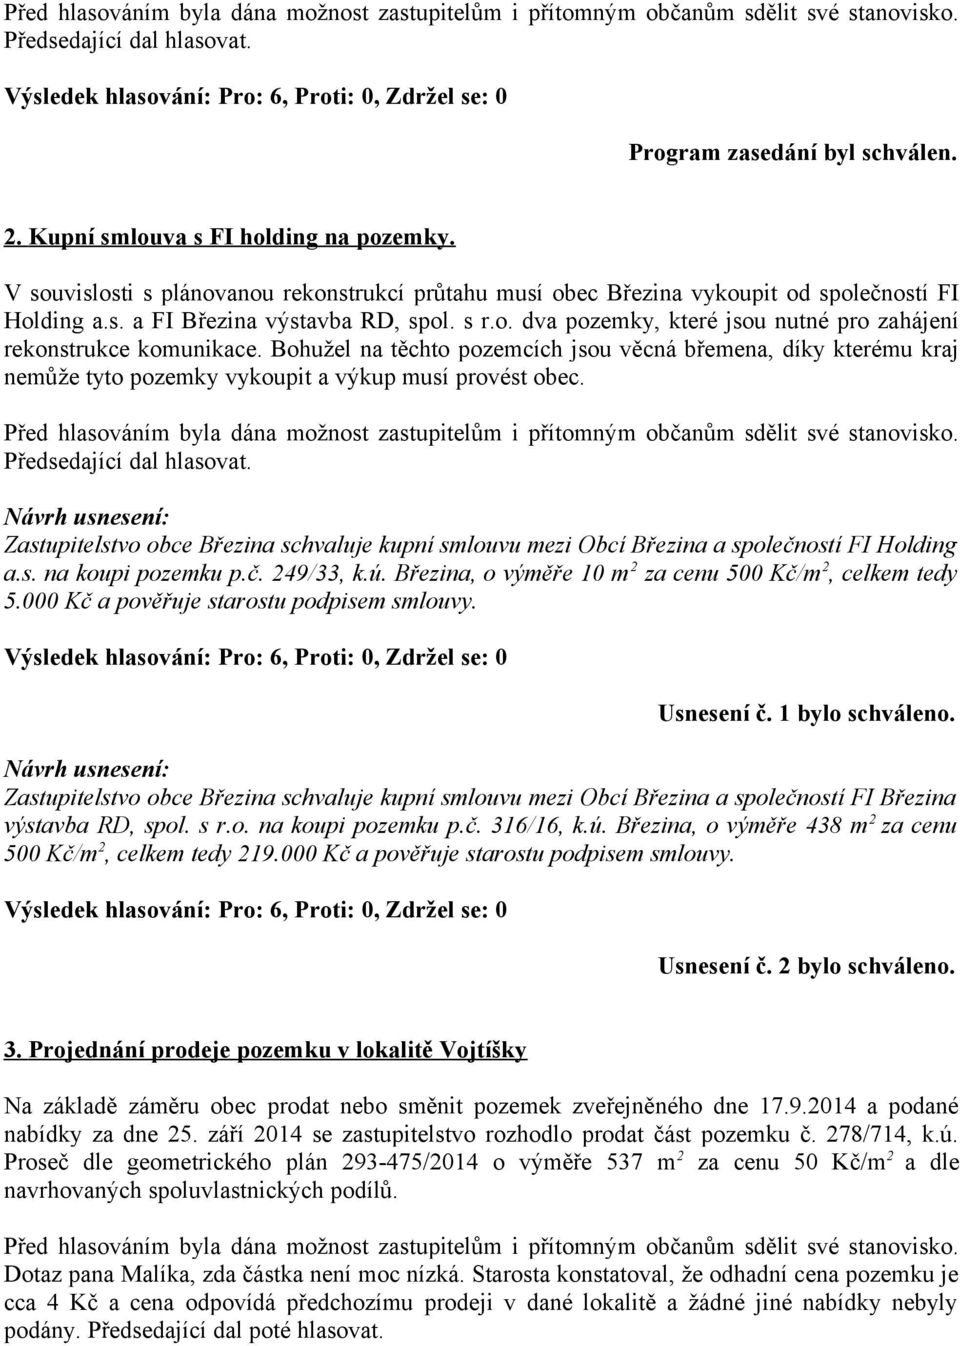 Zastupitelstvo obce Březina schvaluje kupní smlouvu mezi Obcí Březina a společností FI Holding a.s. na koupi pozemku p.č. 249/33, k.ú. Březina, o výměře 10 m 2 za cenu 500 Kč/m 2, celkem tedy 5.